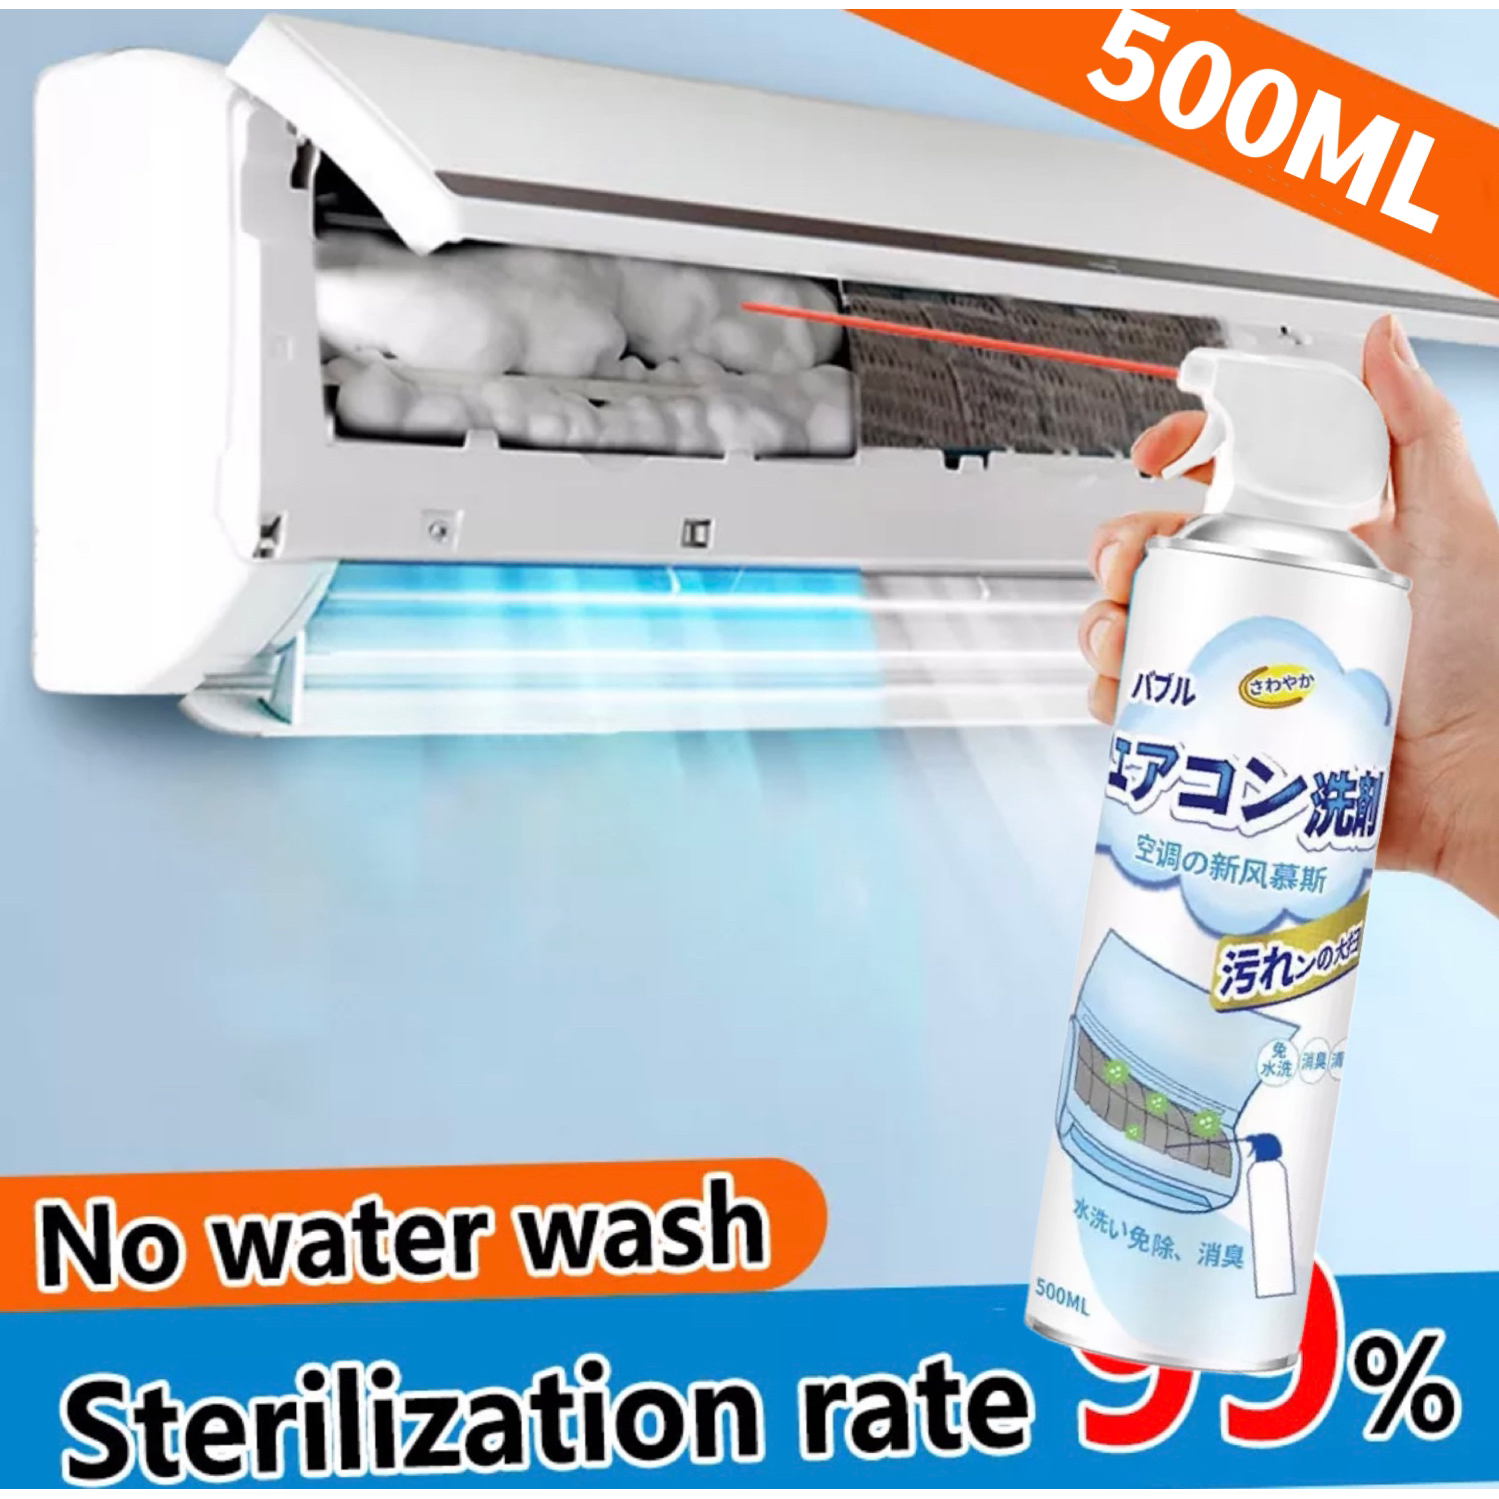 Japan Xịt vệ sinh máy lạnh tẩy sạch các vết bụi bẩn và diệt các loại vi khuẩn nấm mốc mùi hôi khó chịu của máy lạnh/500ml